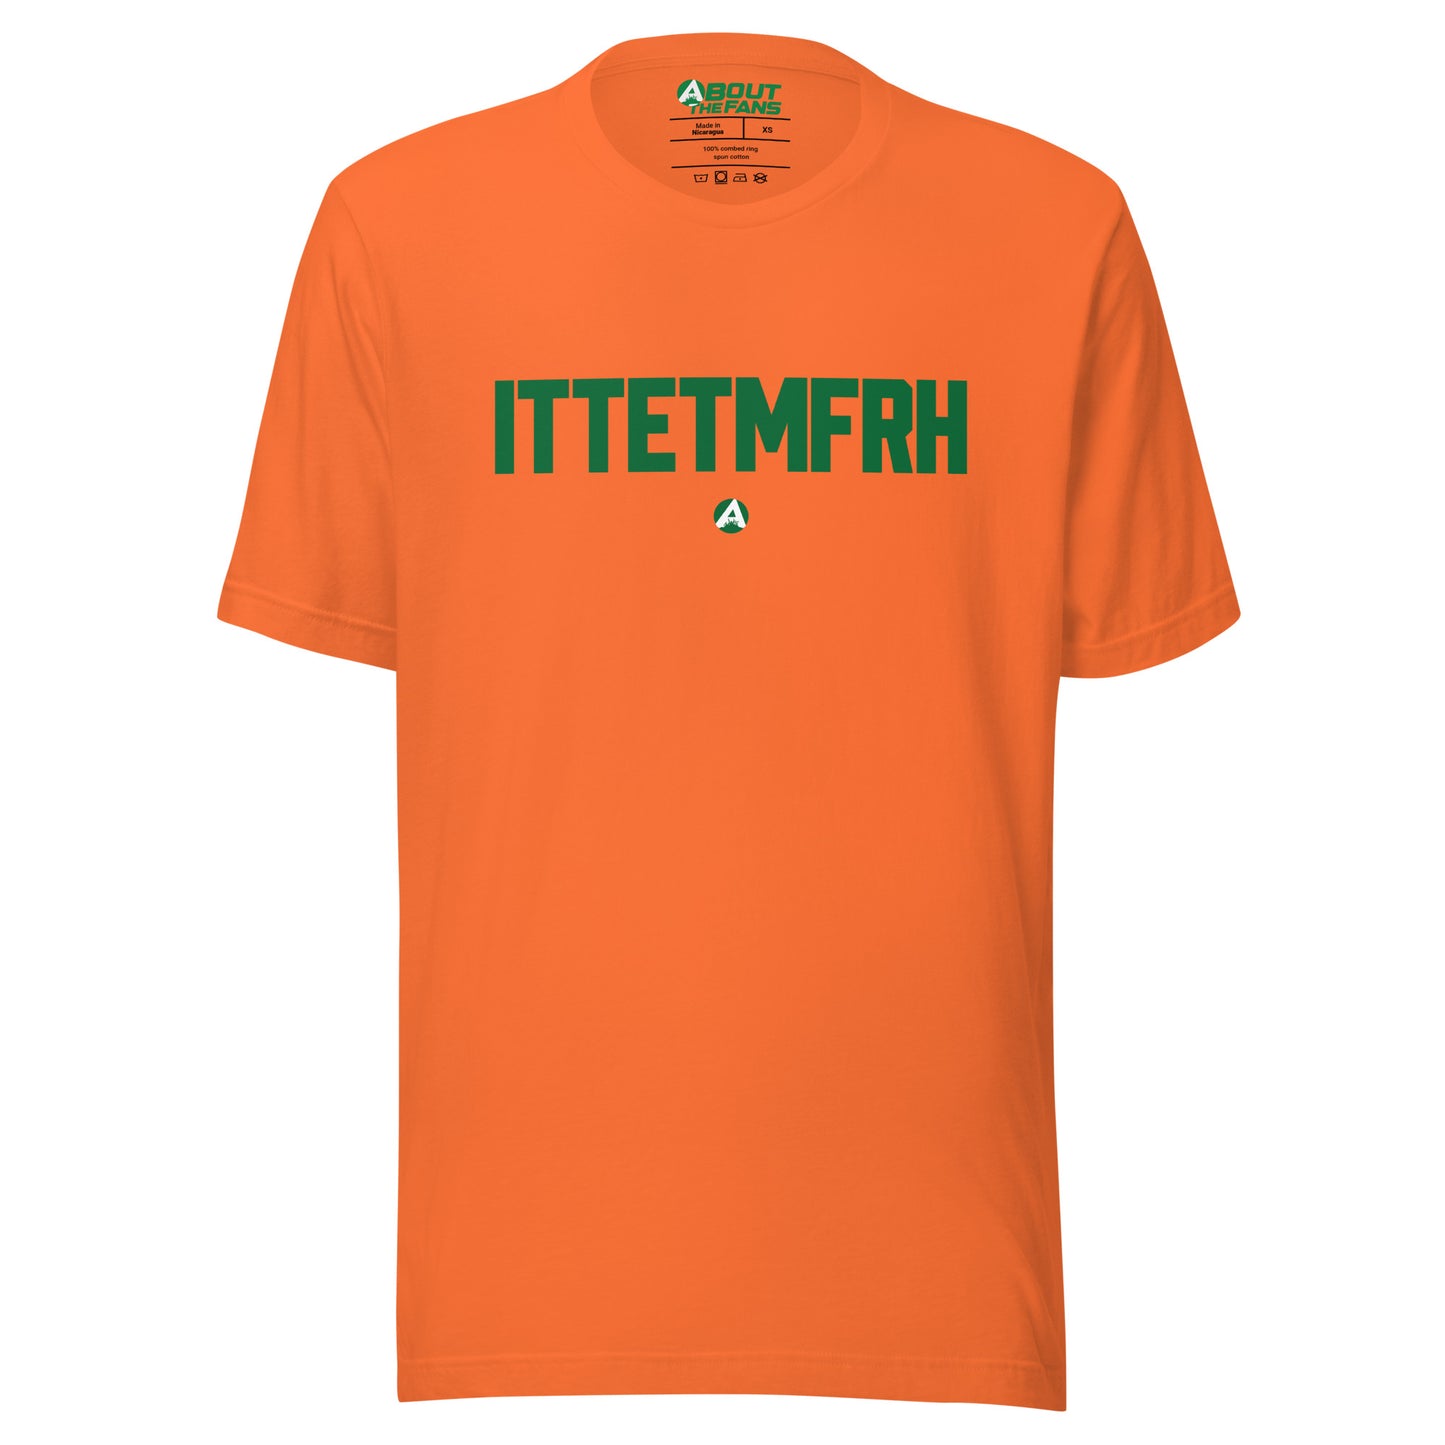 ITTETMFRH Shirt